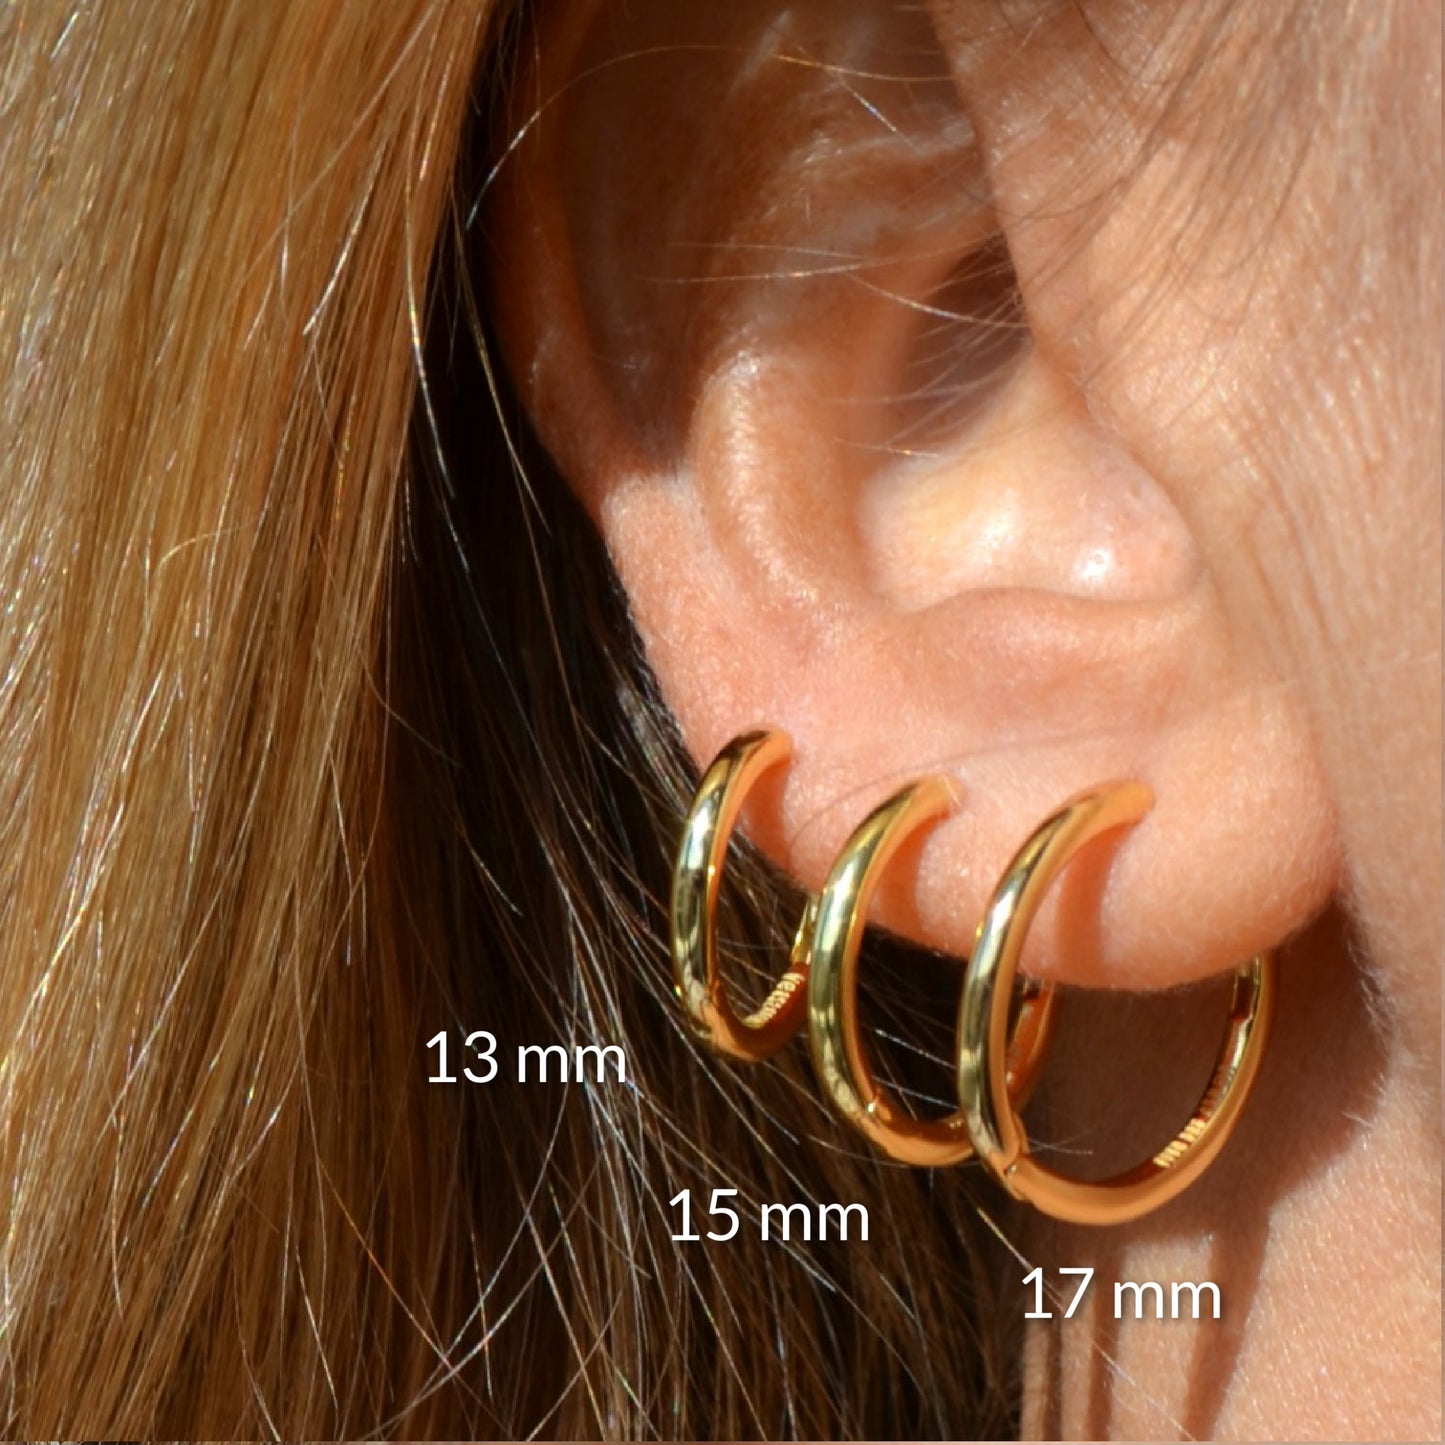 aros pequeños de piercing básicos con cierre fácil que están confeccinados en plata de ley con baño de oro 18 kilates. Gold plated sterling silver hoop earrings for helix piercing.